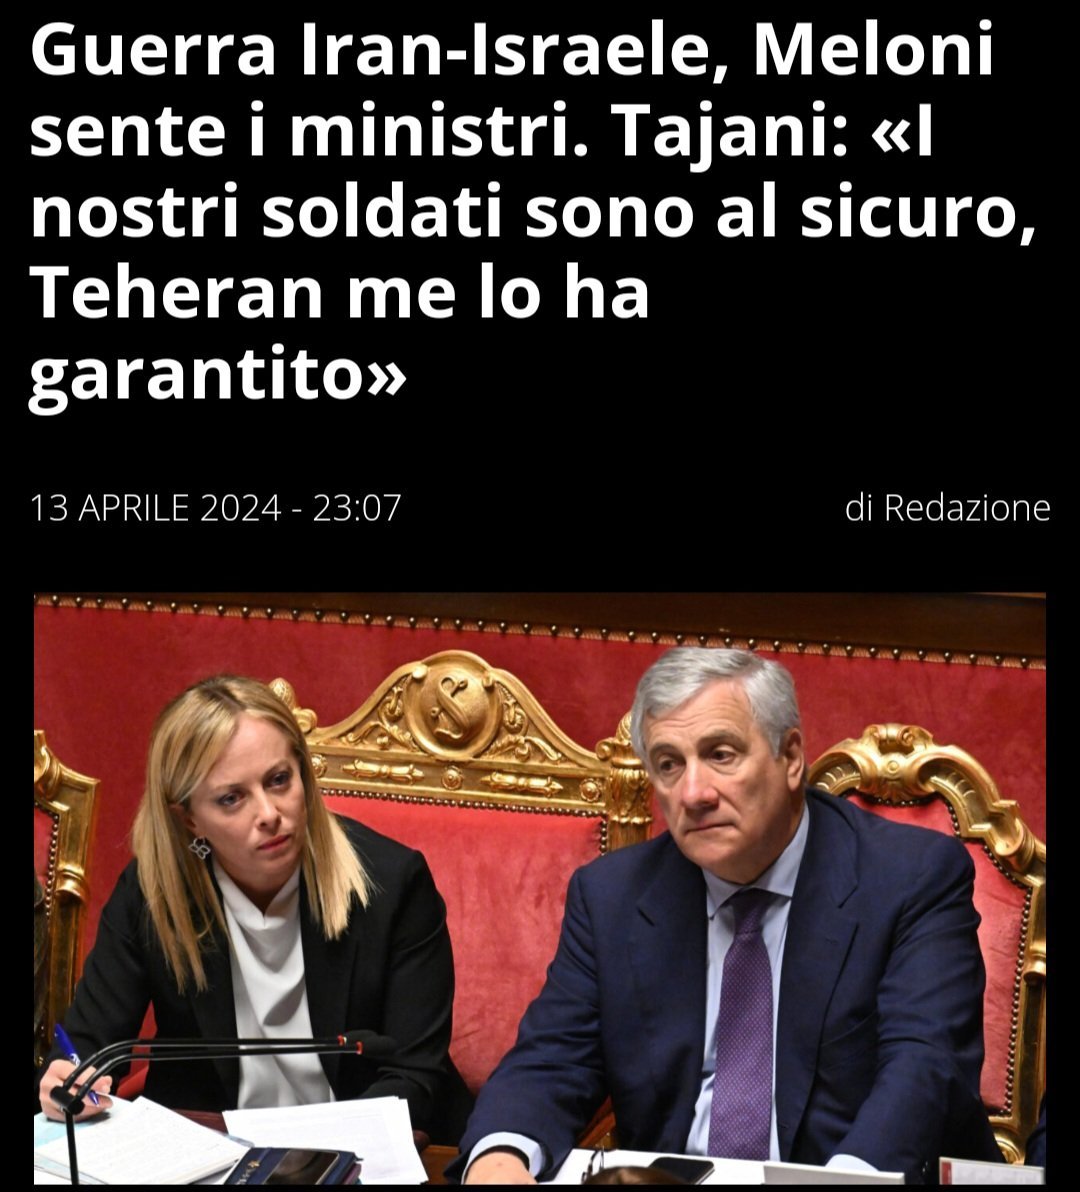 Non ci si può credere.
Questo è il livello?
Mamma mia. Poveri noi.
#Tajani